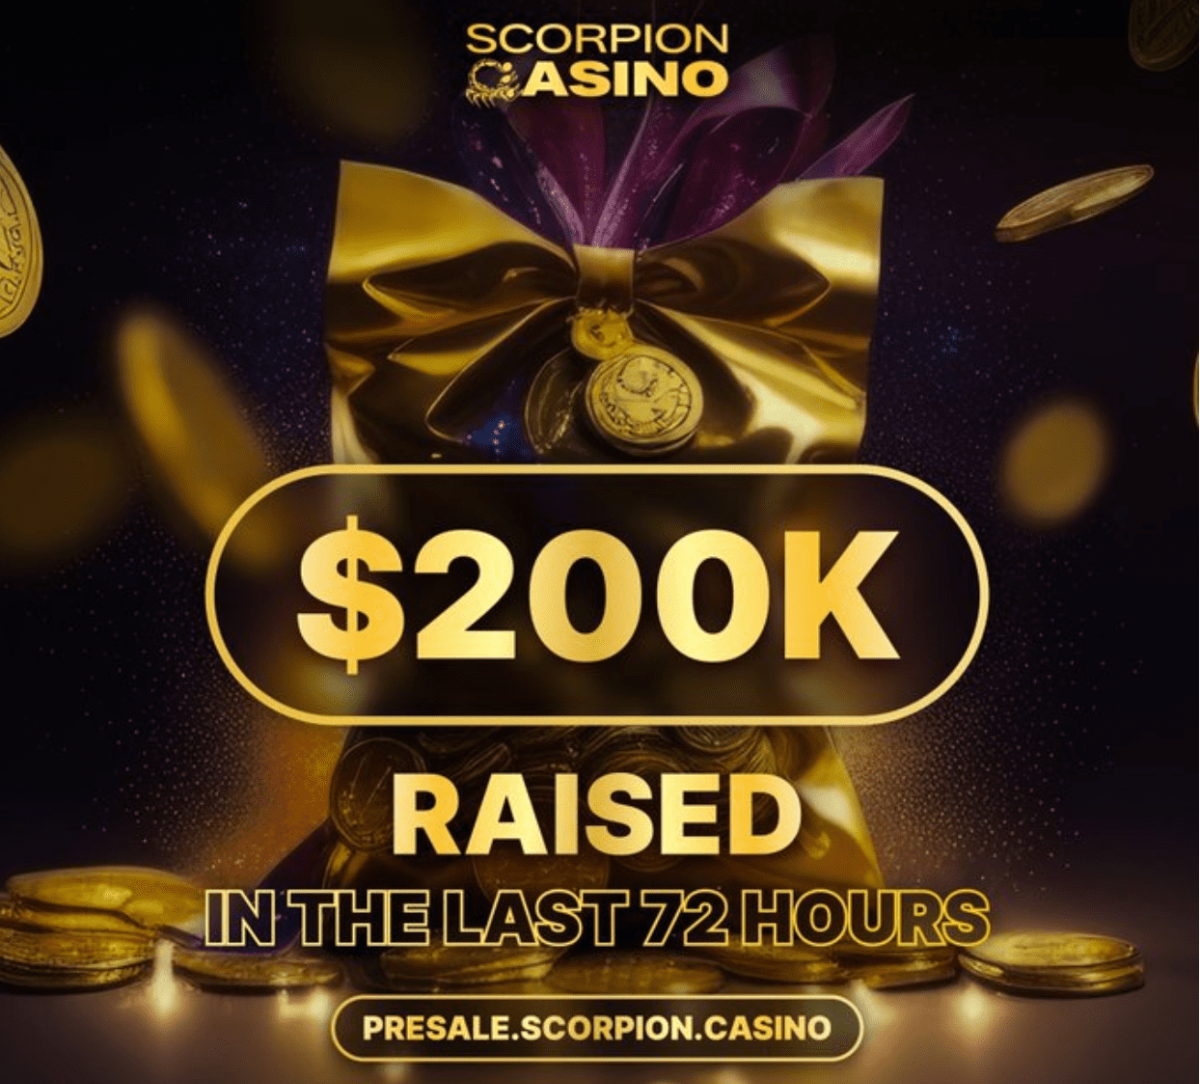 Scorpion Casinoプレセール、直近3日で売上20万ドル達成